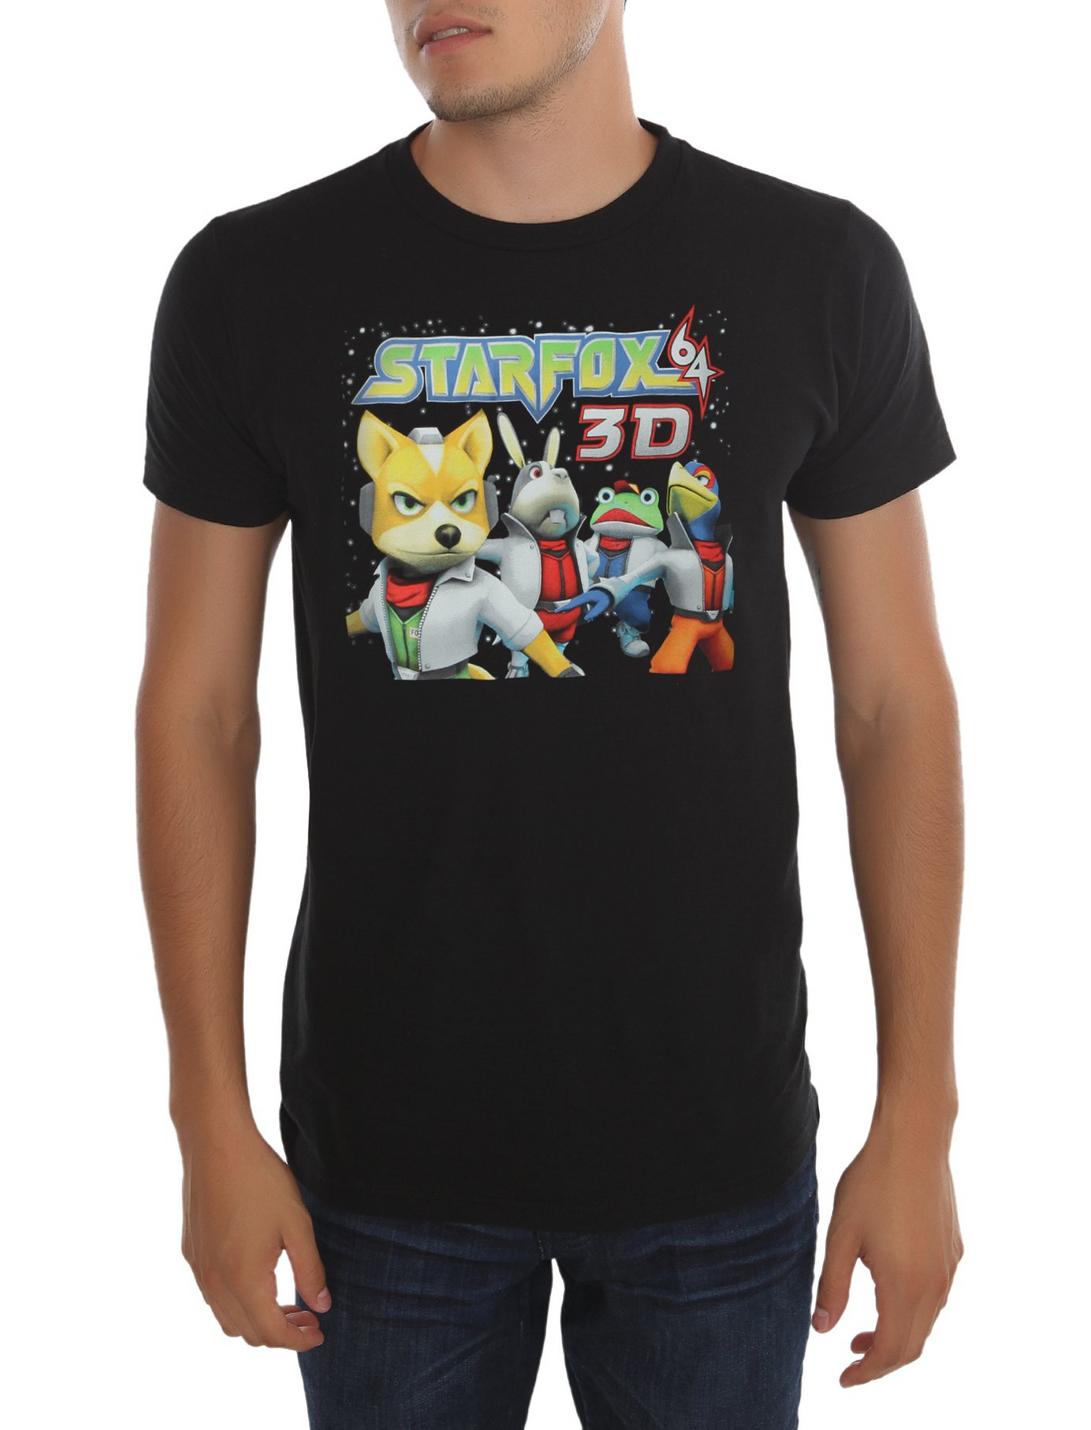 Star Fox 64 3D Characters T-Shirt, BLACK, hi-res